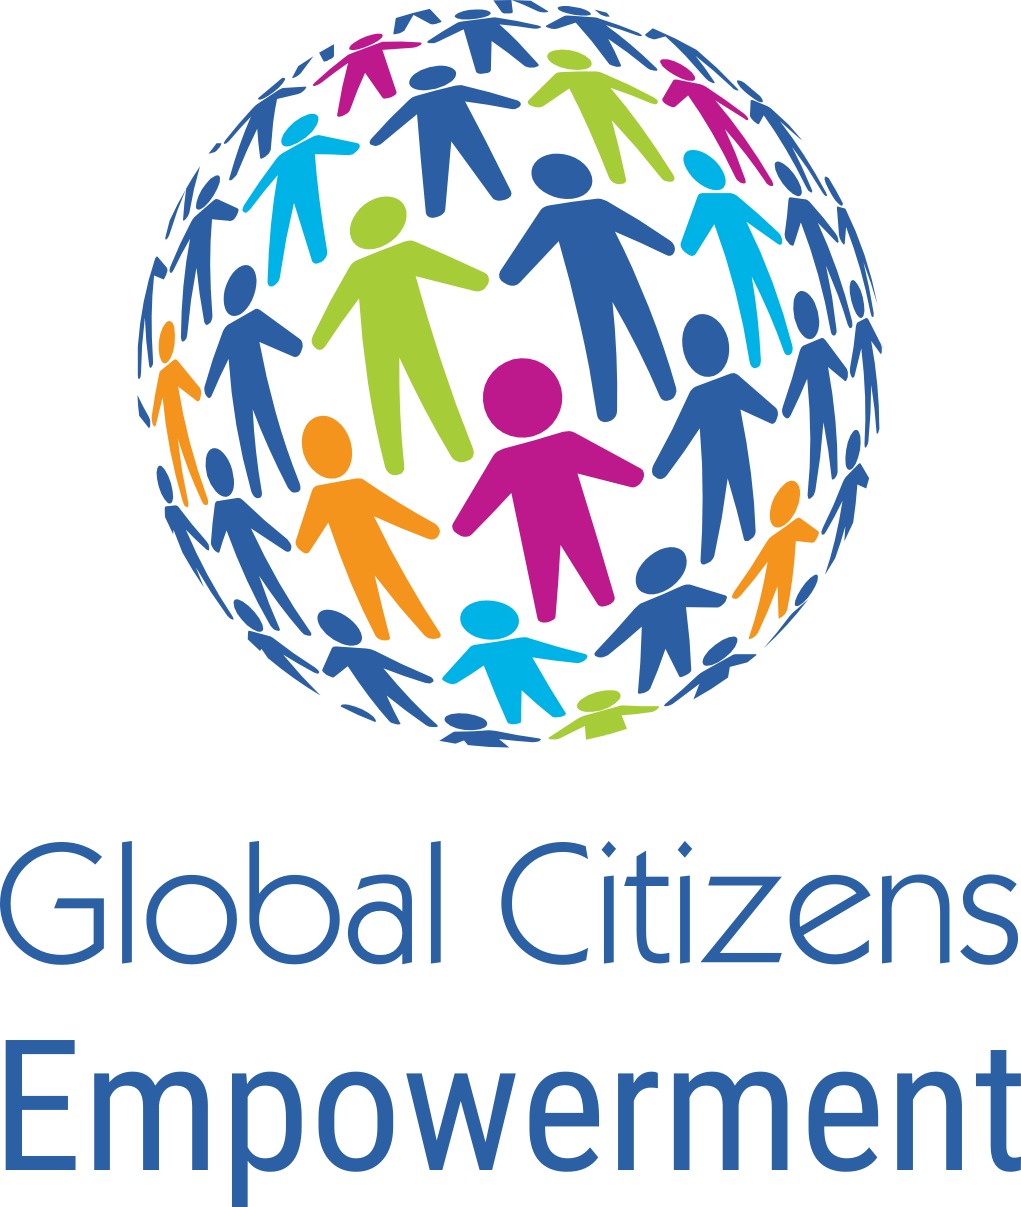 Global Citizens Empowerment logo